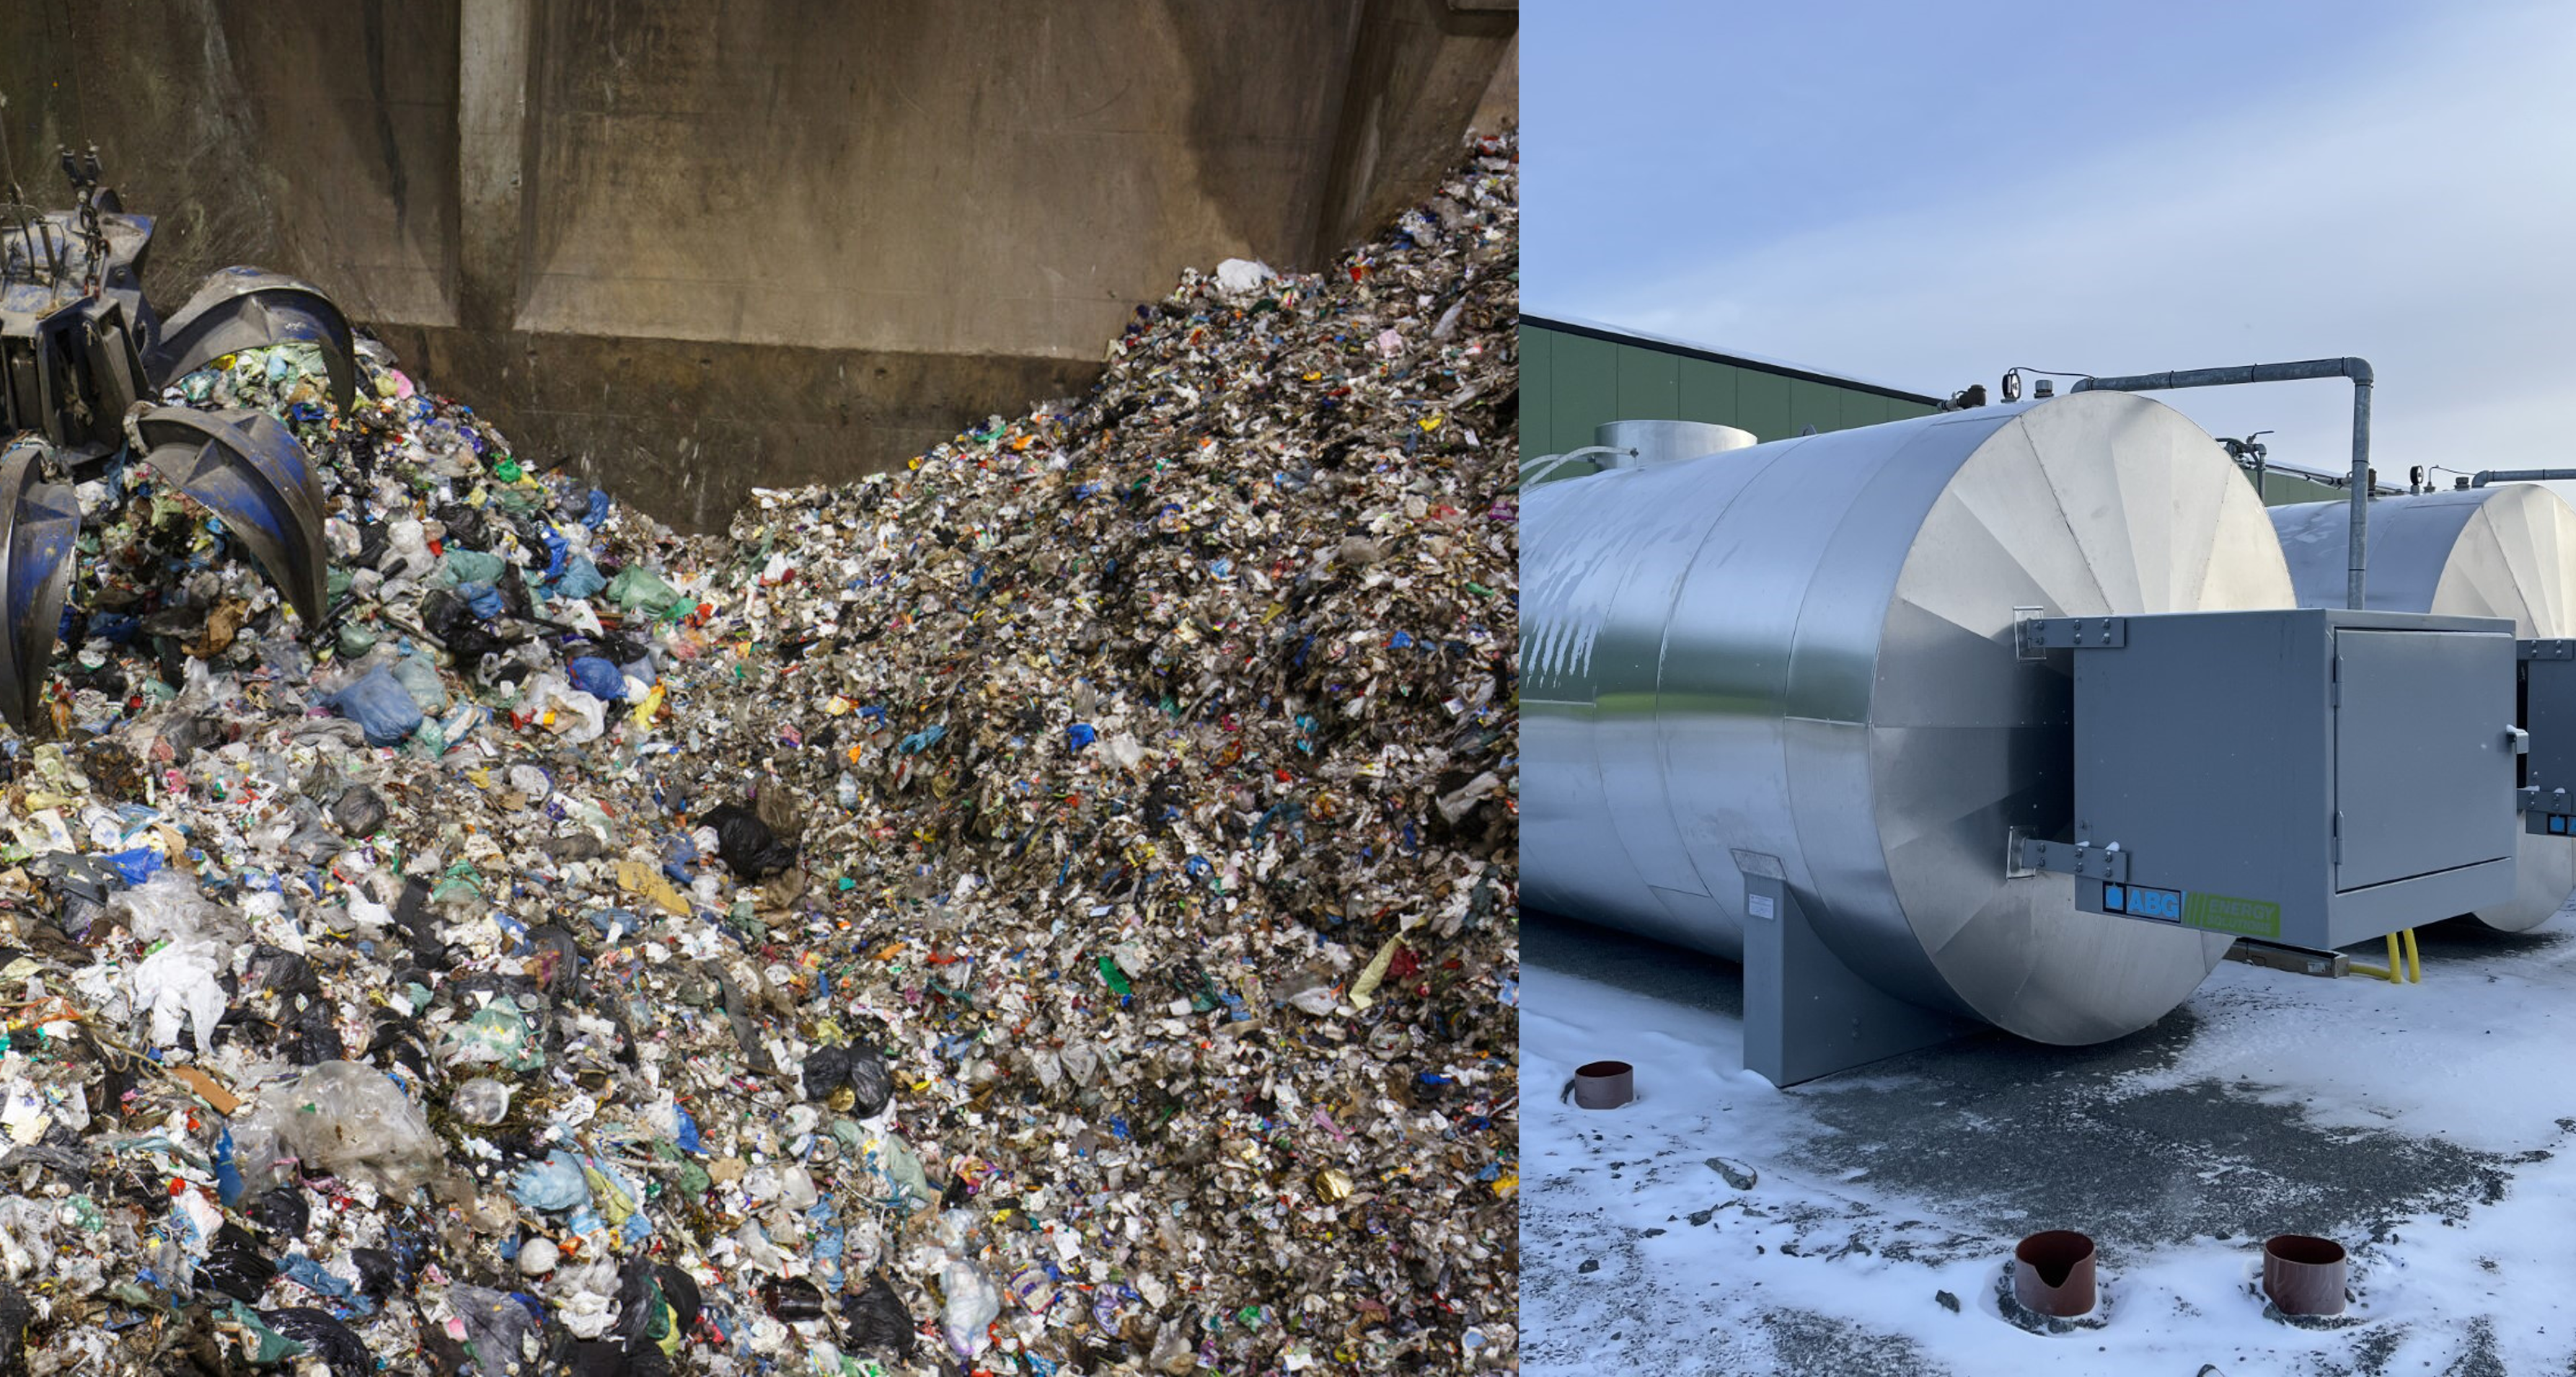 Tvådelad bild till vänster en bunker innehållande restavfall med gripklo, till höger tankar innehållande bioolja.